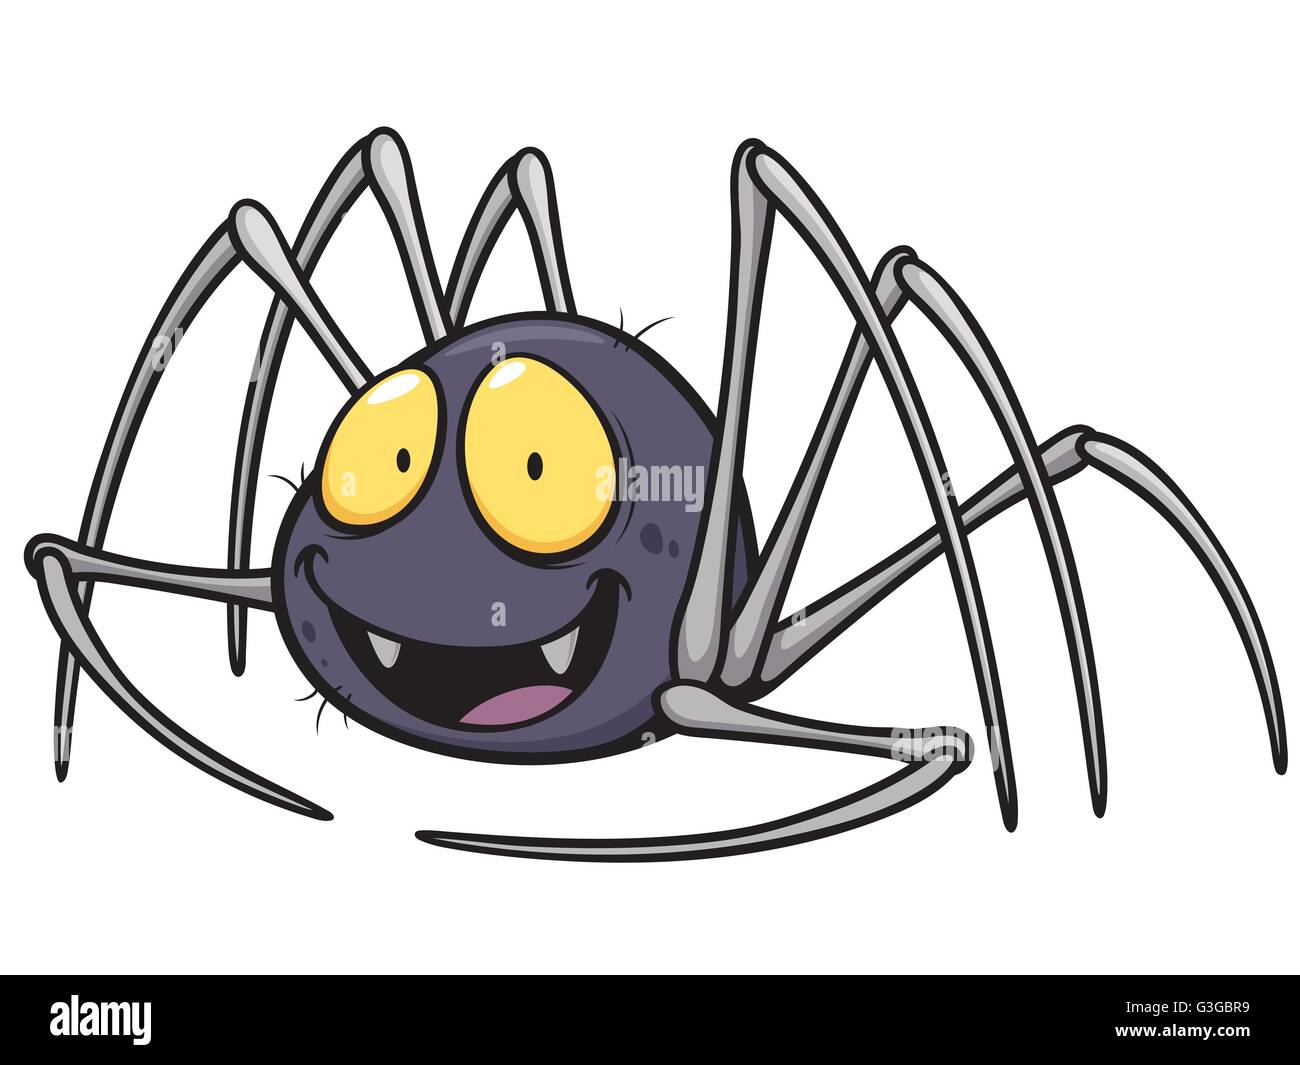 Vector illustration of Spider cartoon Stock Vector